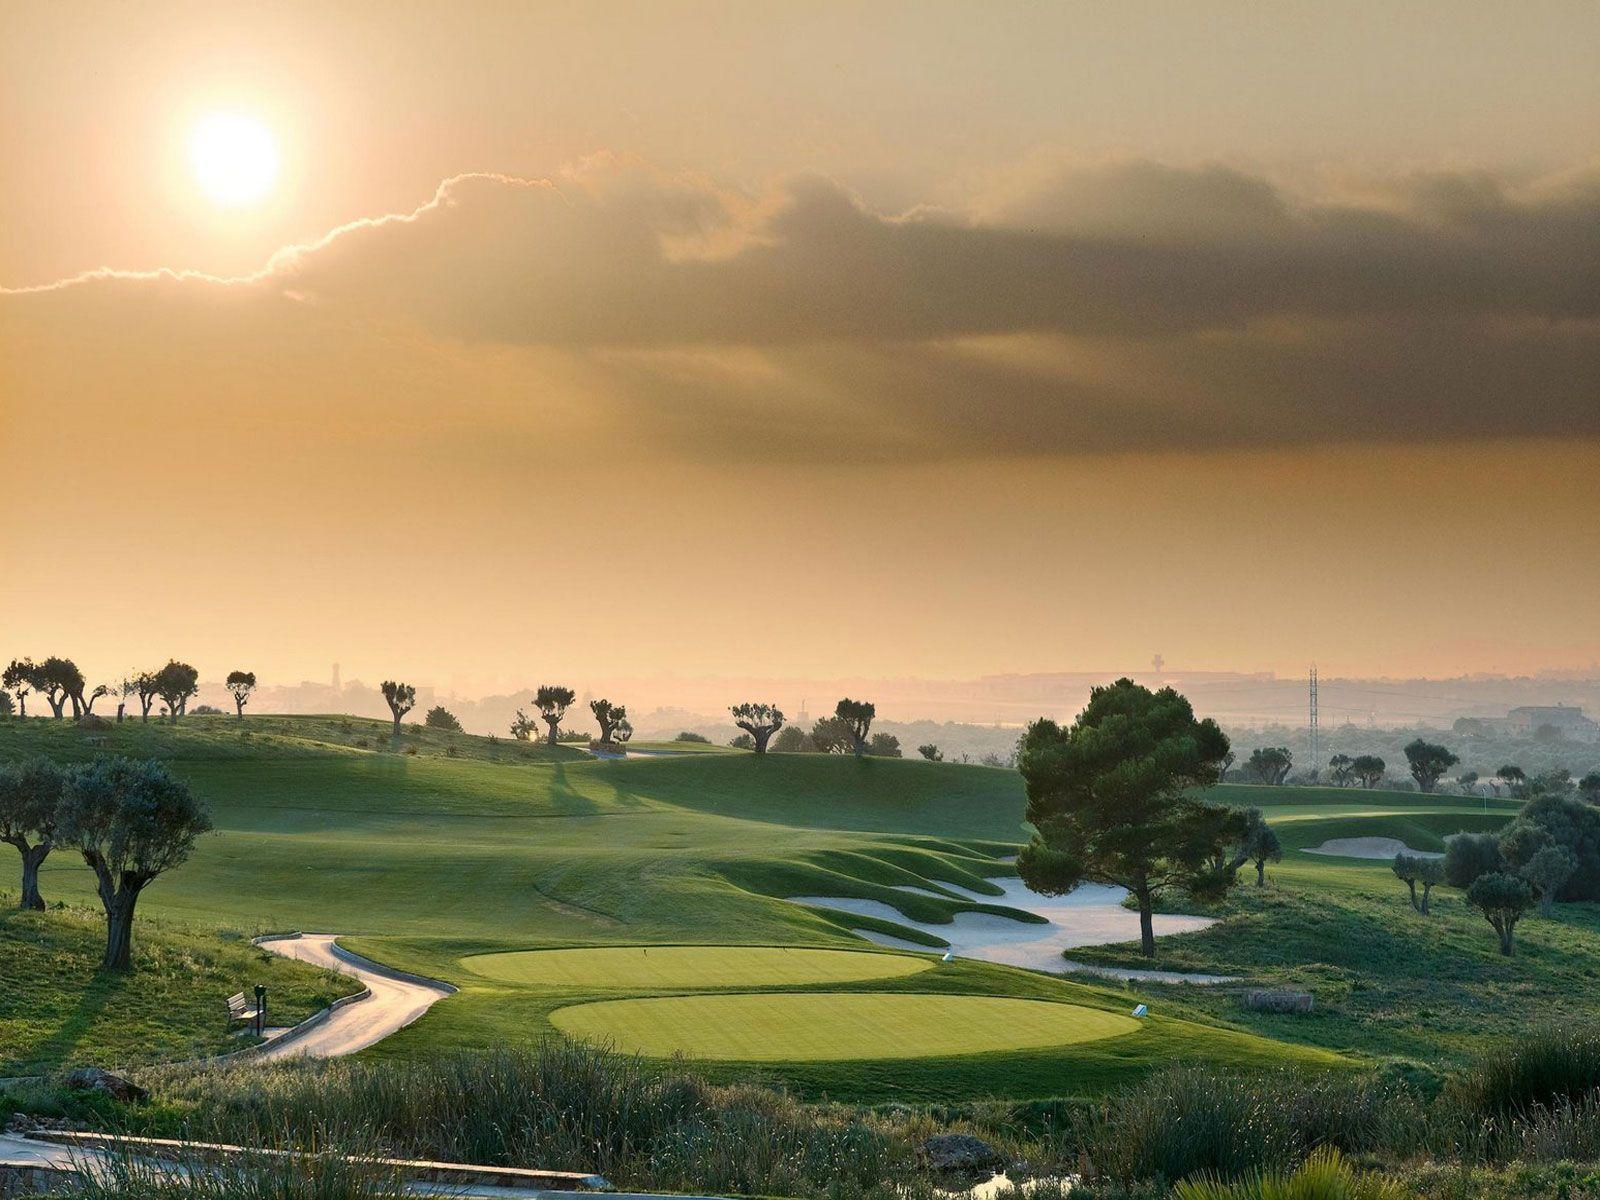 Majorca Golf Course Wallpaper. Stewart Alexander Golf Club